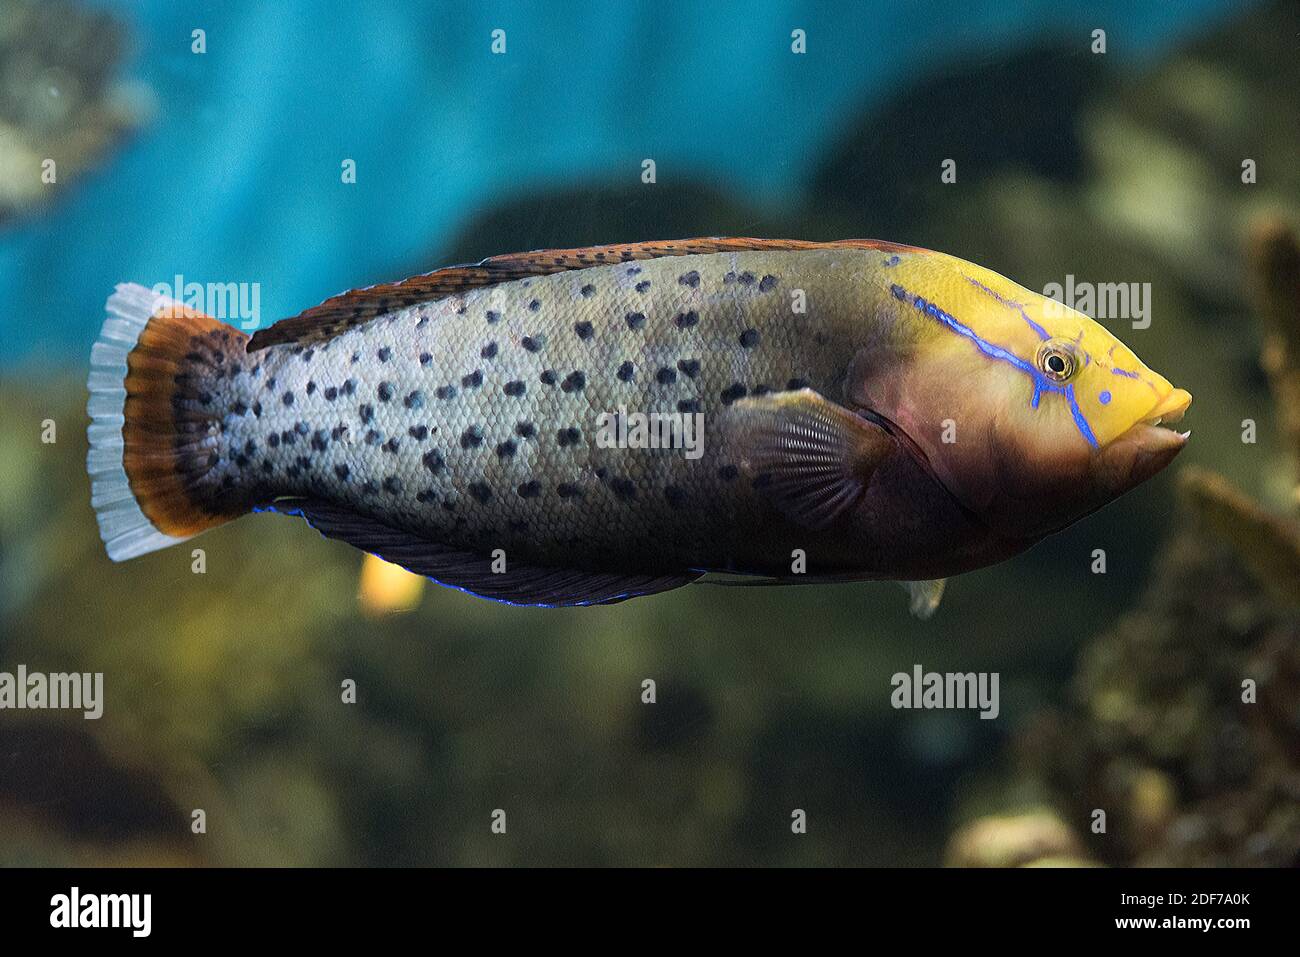 La reina coris o wrasse de Formosa (Coris formosa) es un pez marino nativo del océano Índico tropical. Espécimen adulto. Foto de stock